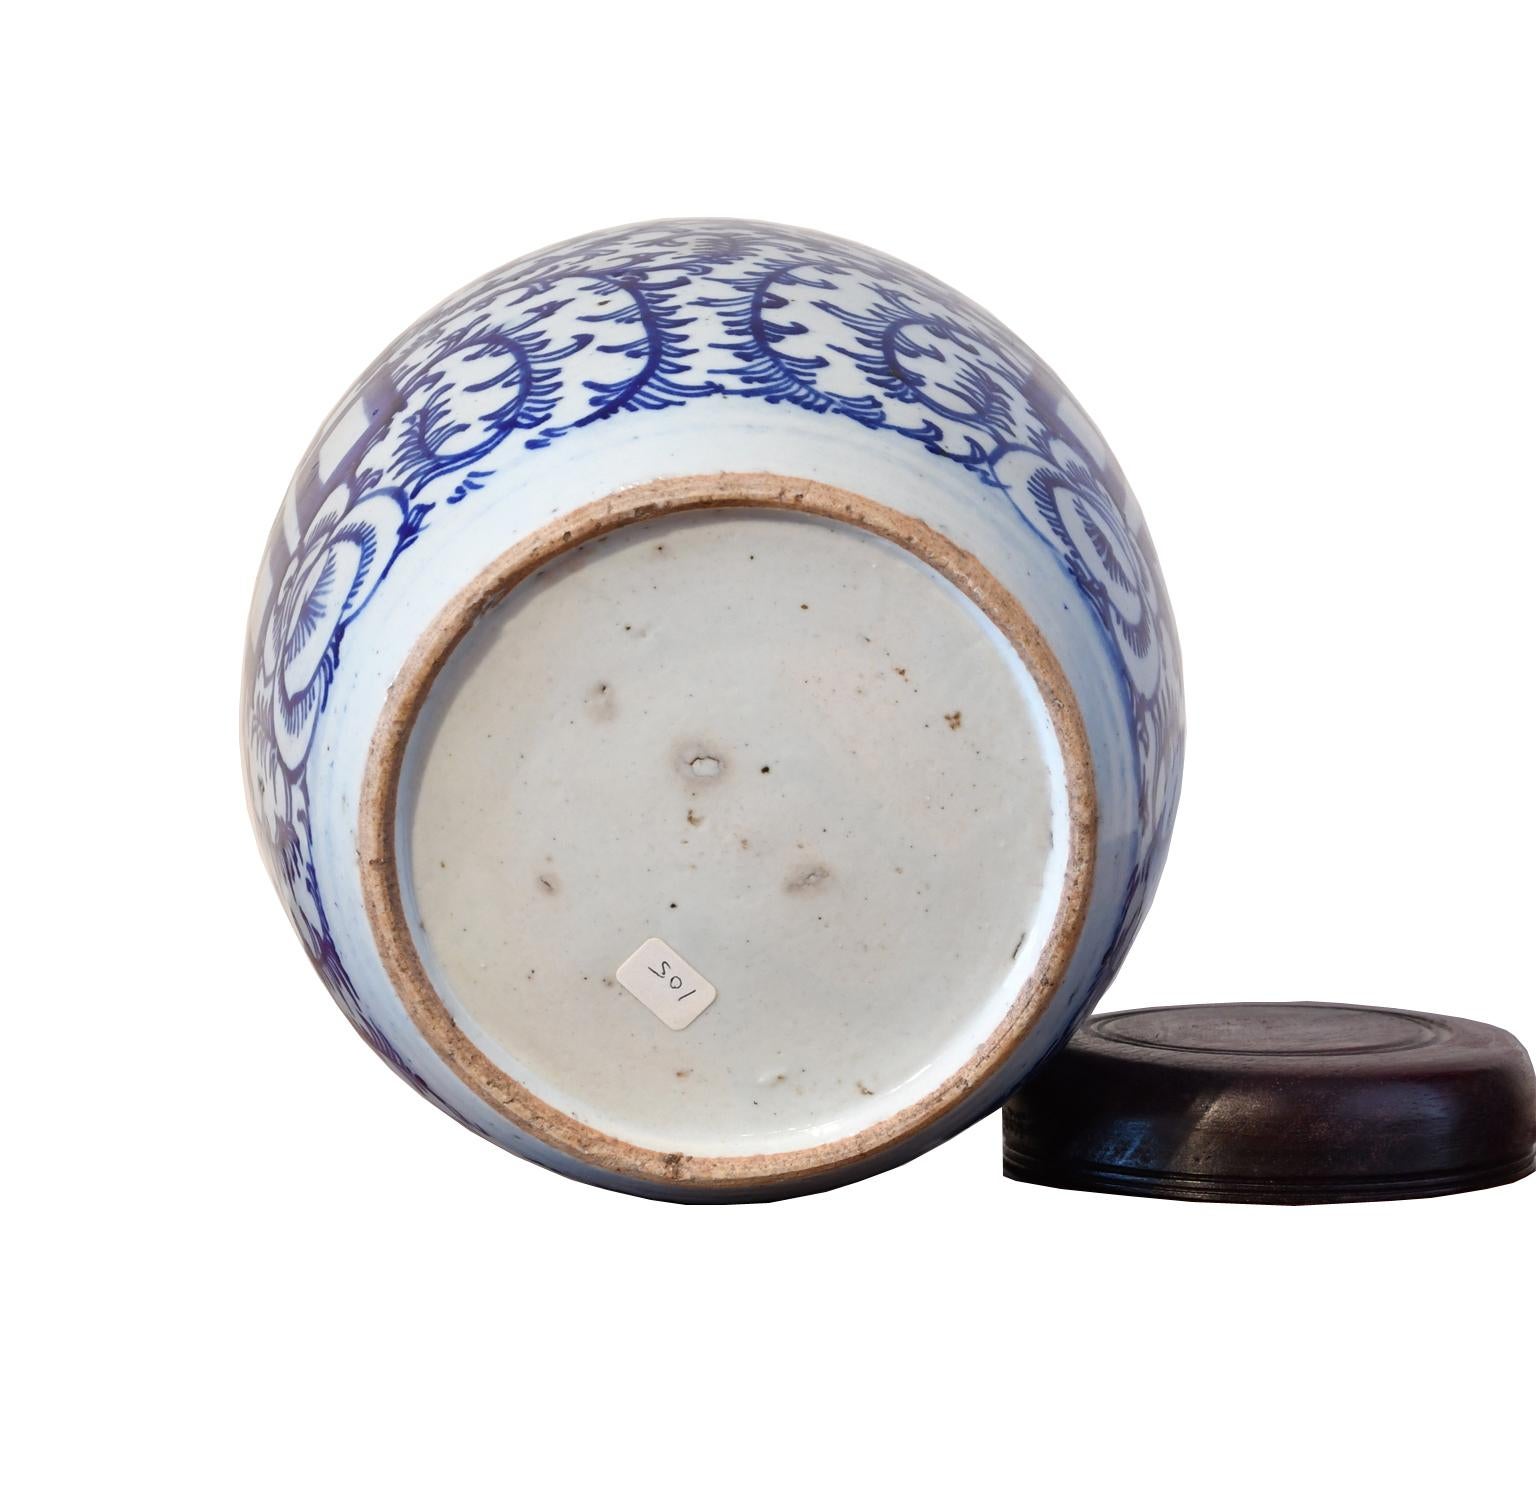 Qing chinesischen Porzellan blau und weiß Shuang-xi Jar mit Double Happiness (Qing-Dynastie)